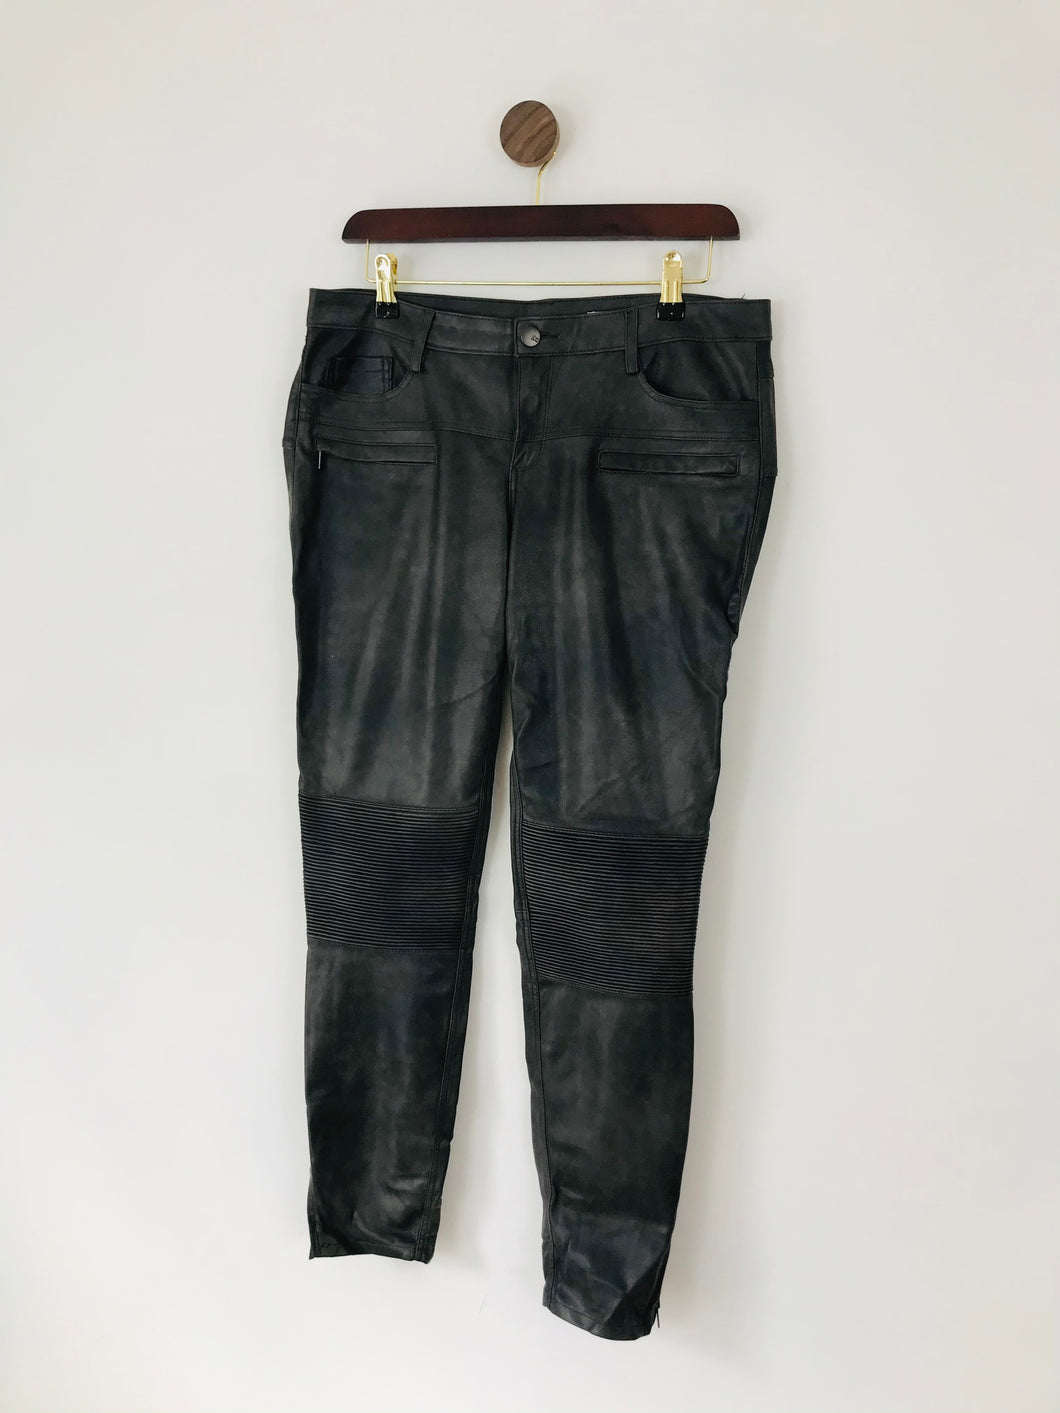 Zara Women’s Slim Faux Leather Look Trousers | M UK10-12 | Grey